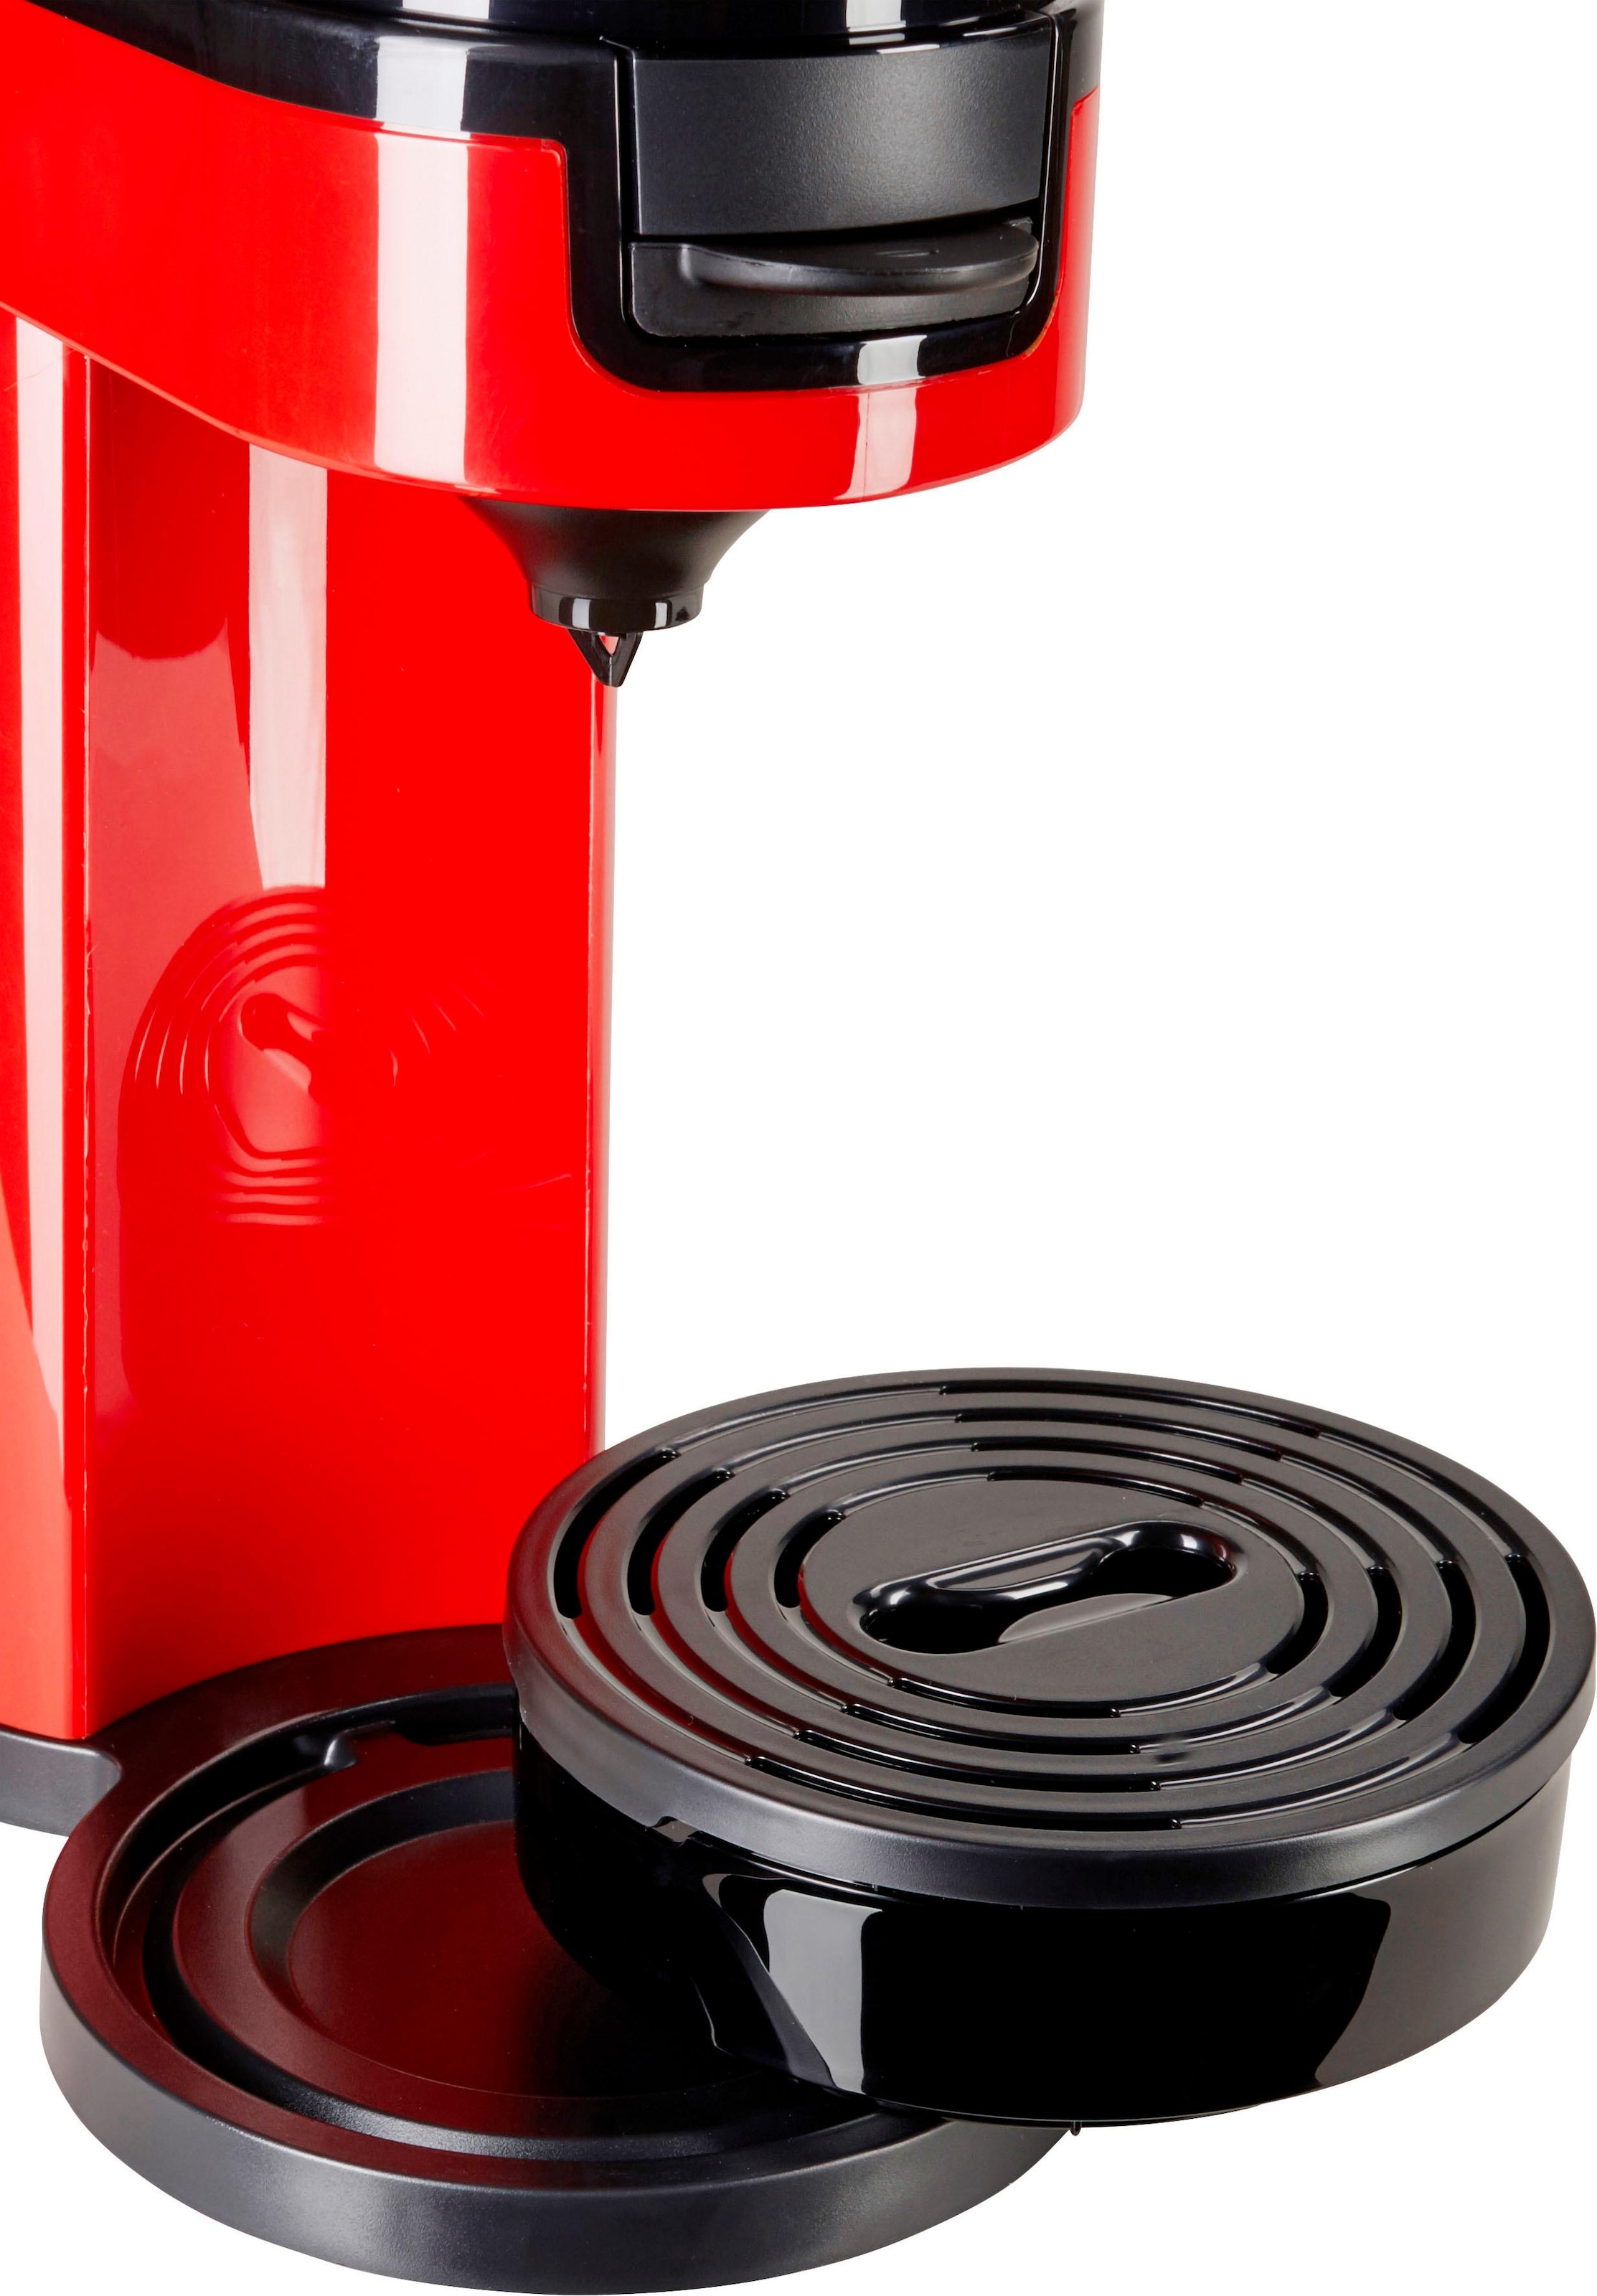 Philips Senseo Kaffeepadmaschine l per Papierfilter, von Switch Raten Kaffeekanne, € »SENSEO® Kaffeepaddose 9,90 im 1 | UVP HD6592/80«, Wert BAUR